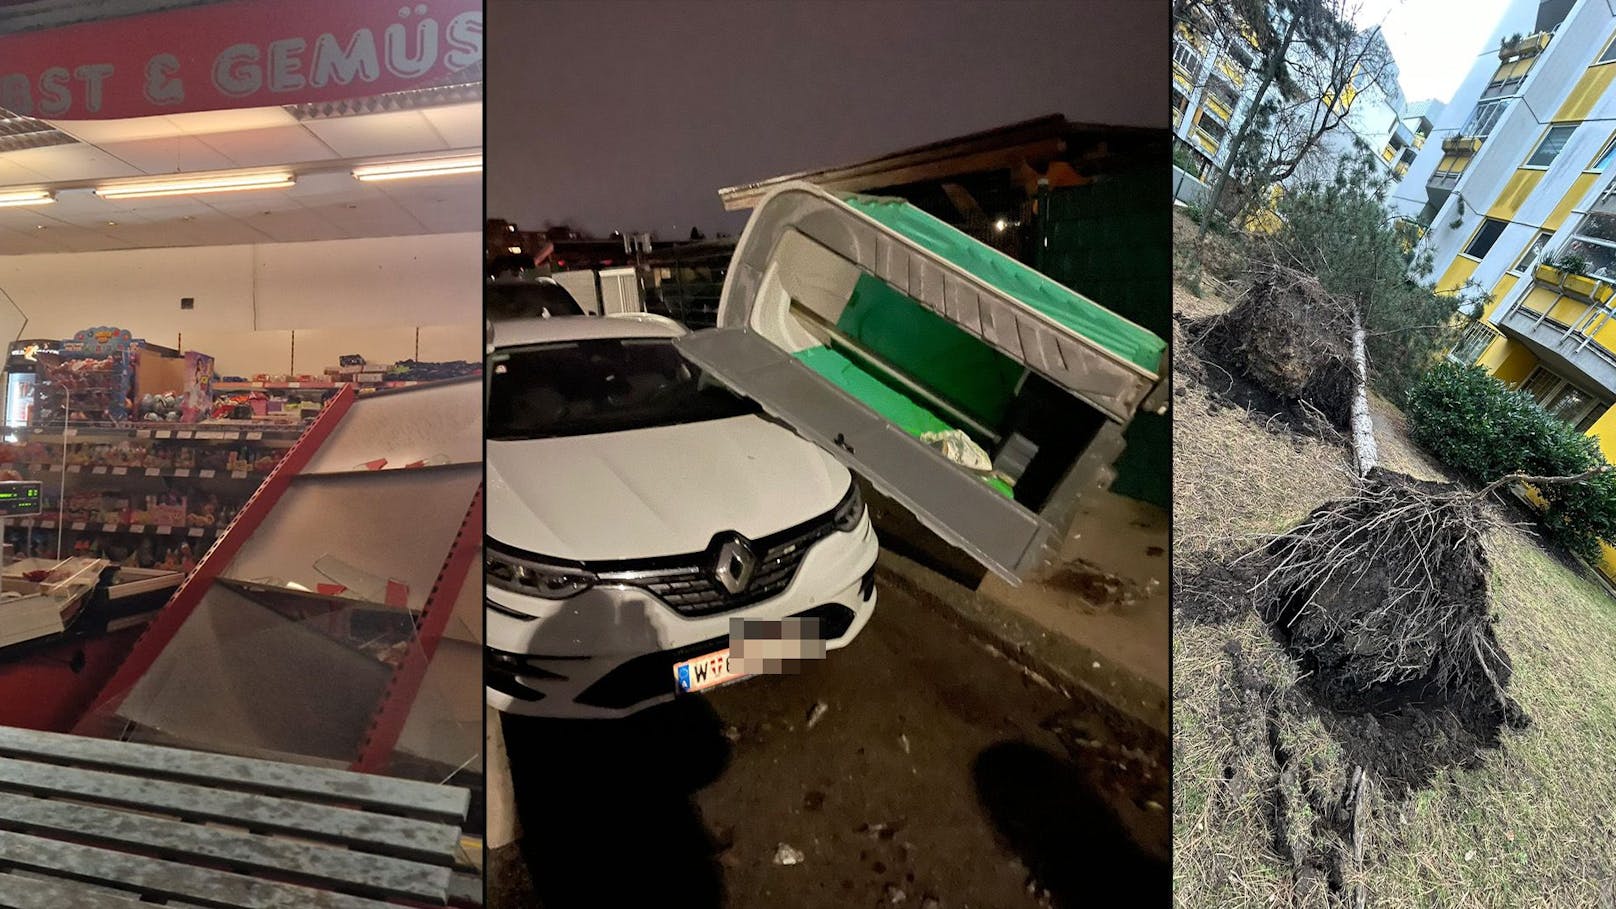 "Sachen fliegen durch die Gegend!" Sturm wütet in Wien